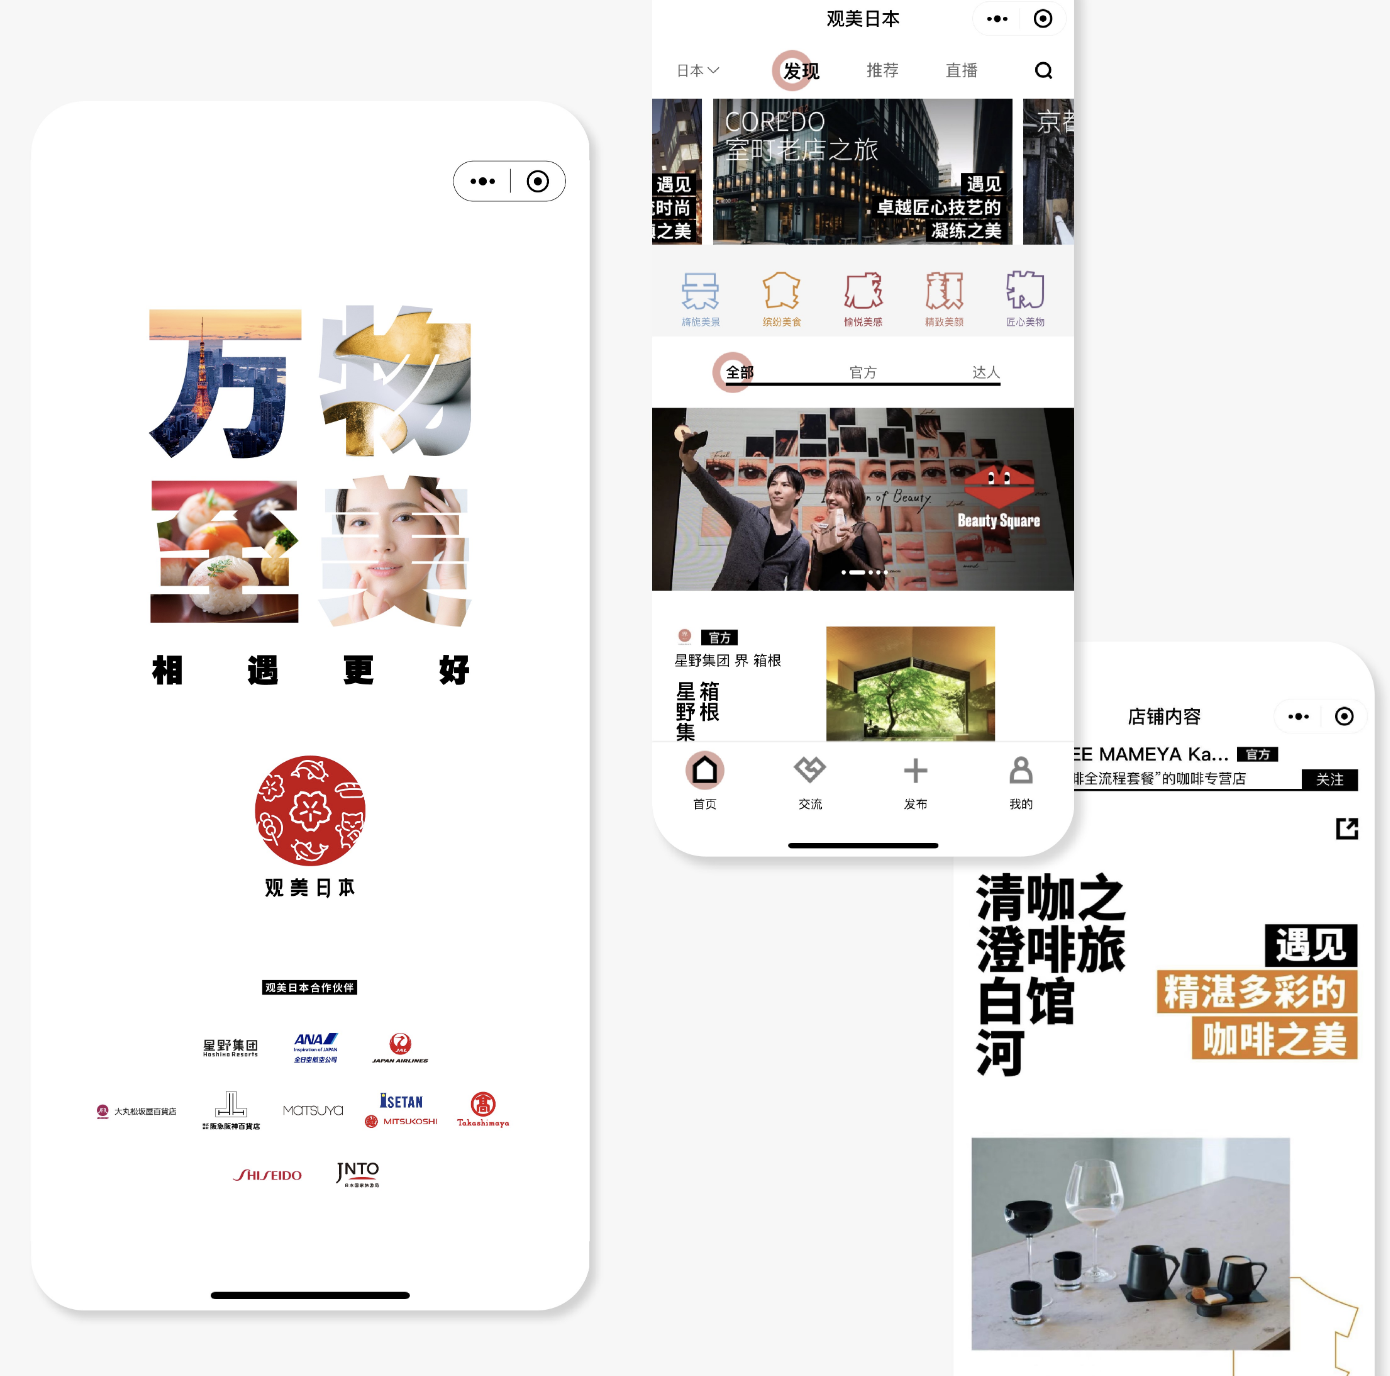 日本国家旅游局推出微信小程序“观美日本”，吸引中国游客旅游购物